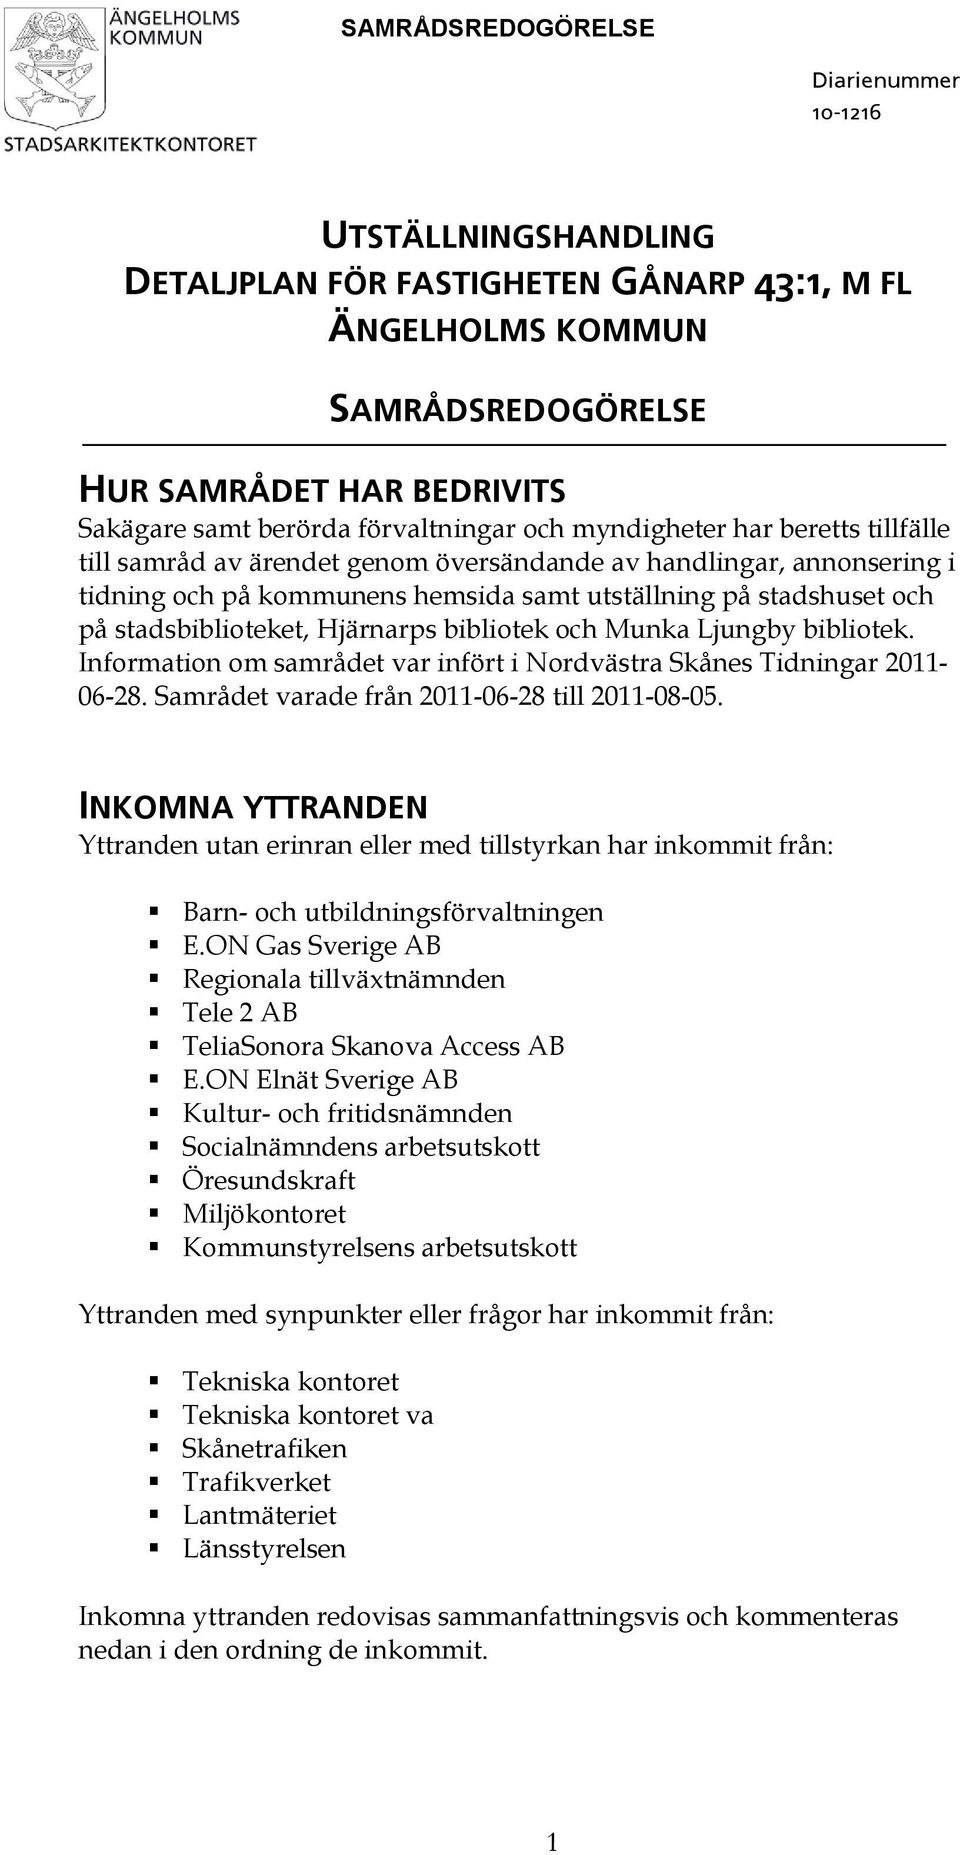 och Munka Ljungby bibliotek. Information om samrådet var infört i Nordvästra Skånes Tidningar 2011-06-28. Samrådet varade från 2011-06-28 till 2011-08-05.